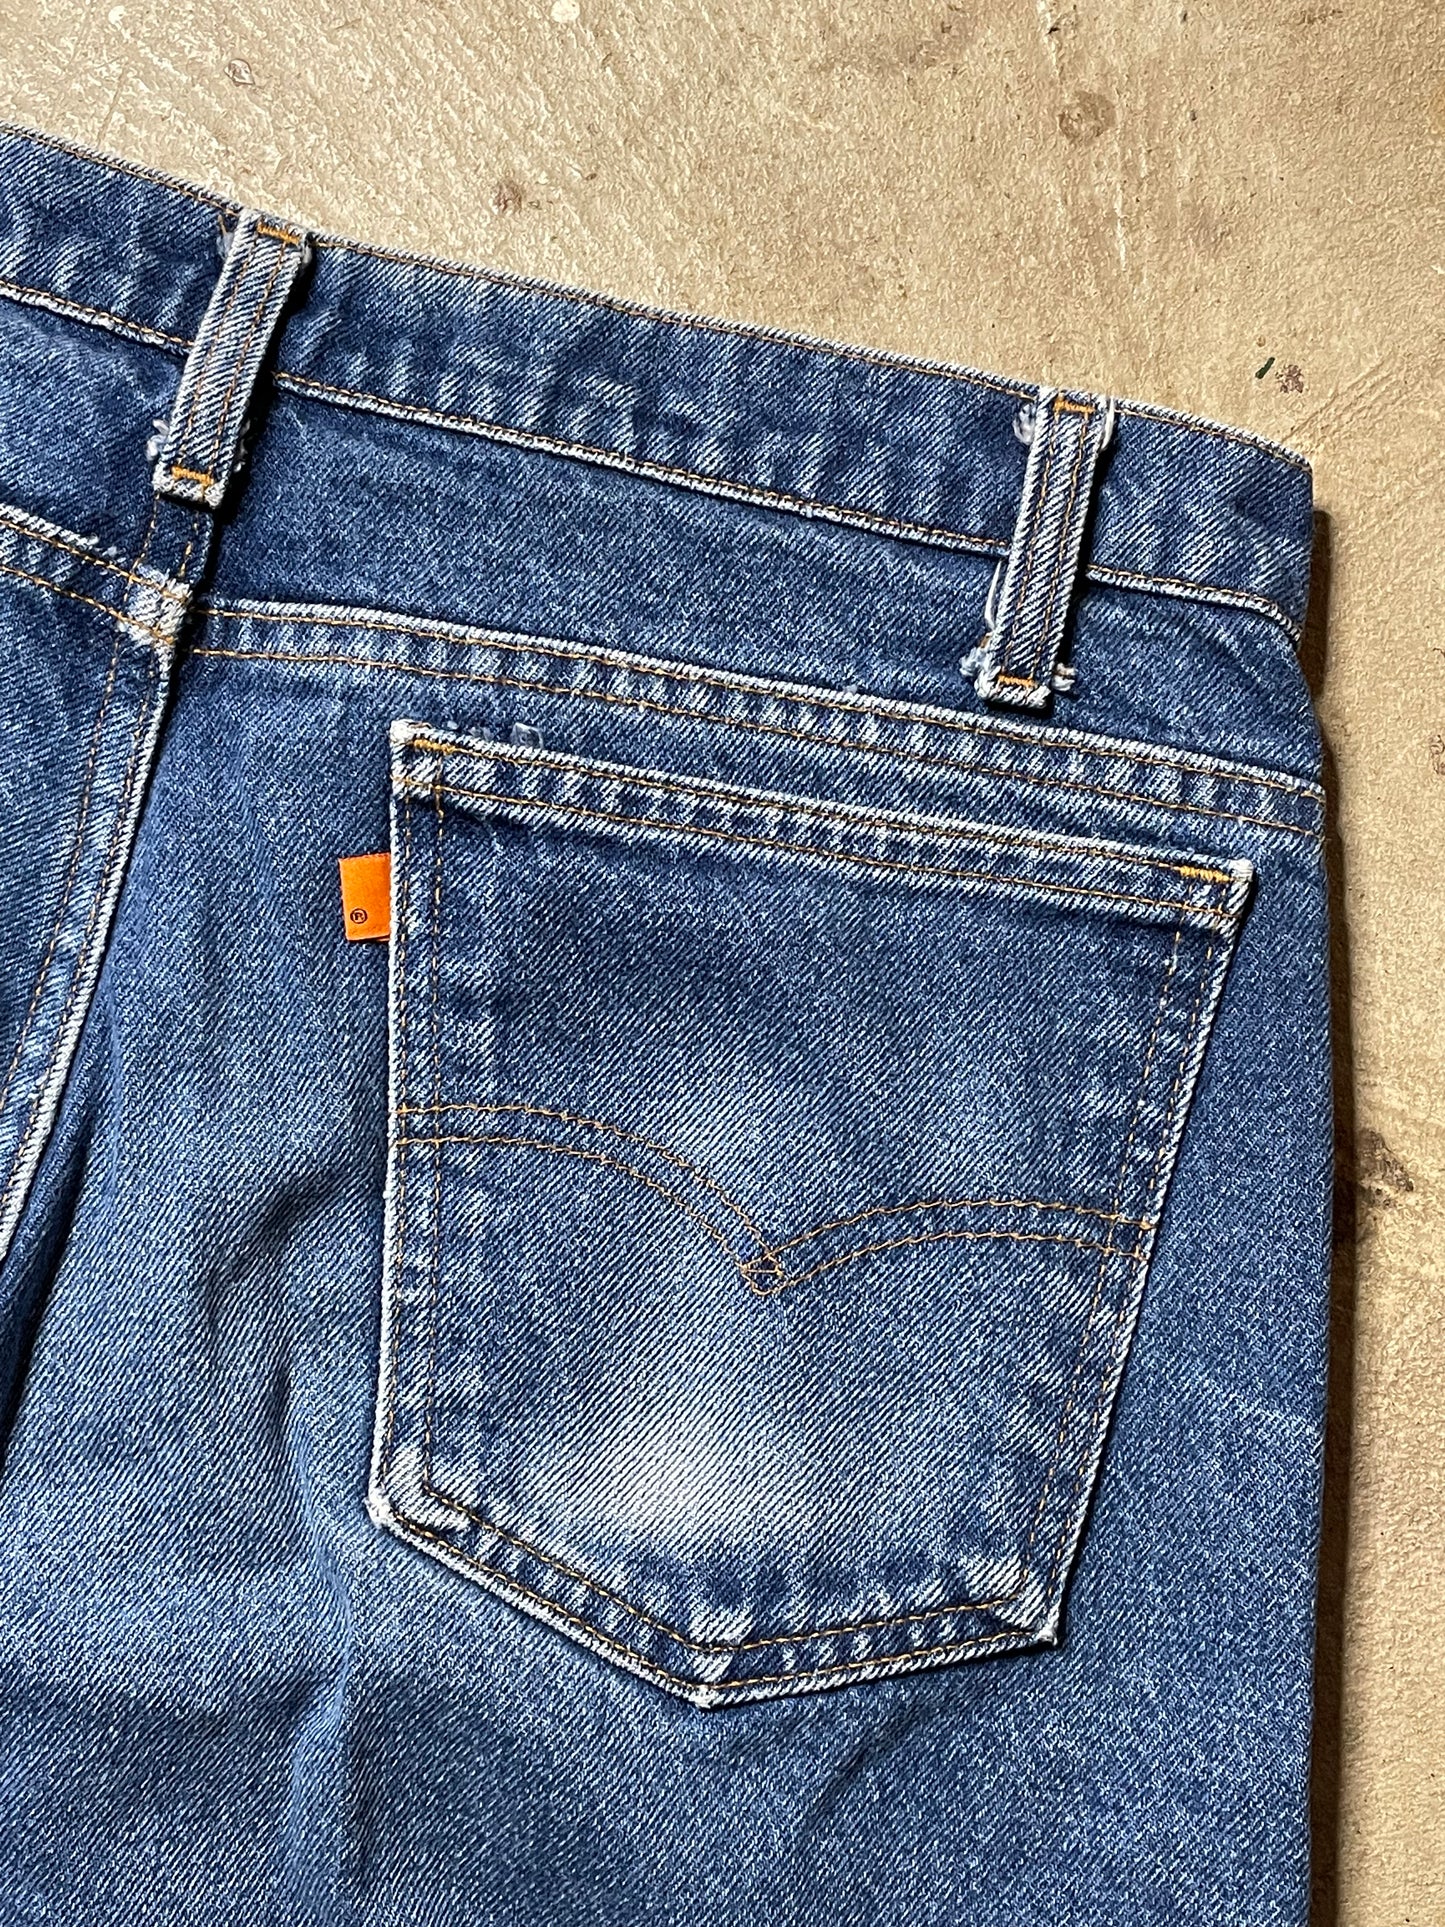 Vintage Orange Tab Levi’s Jeans